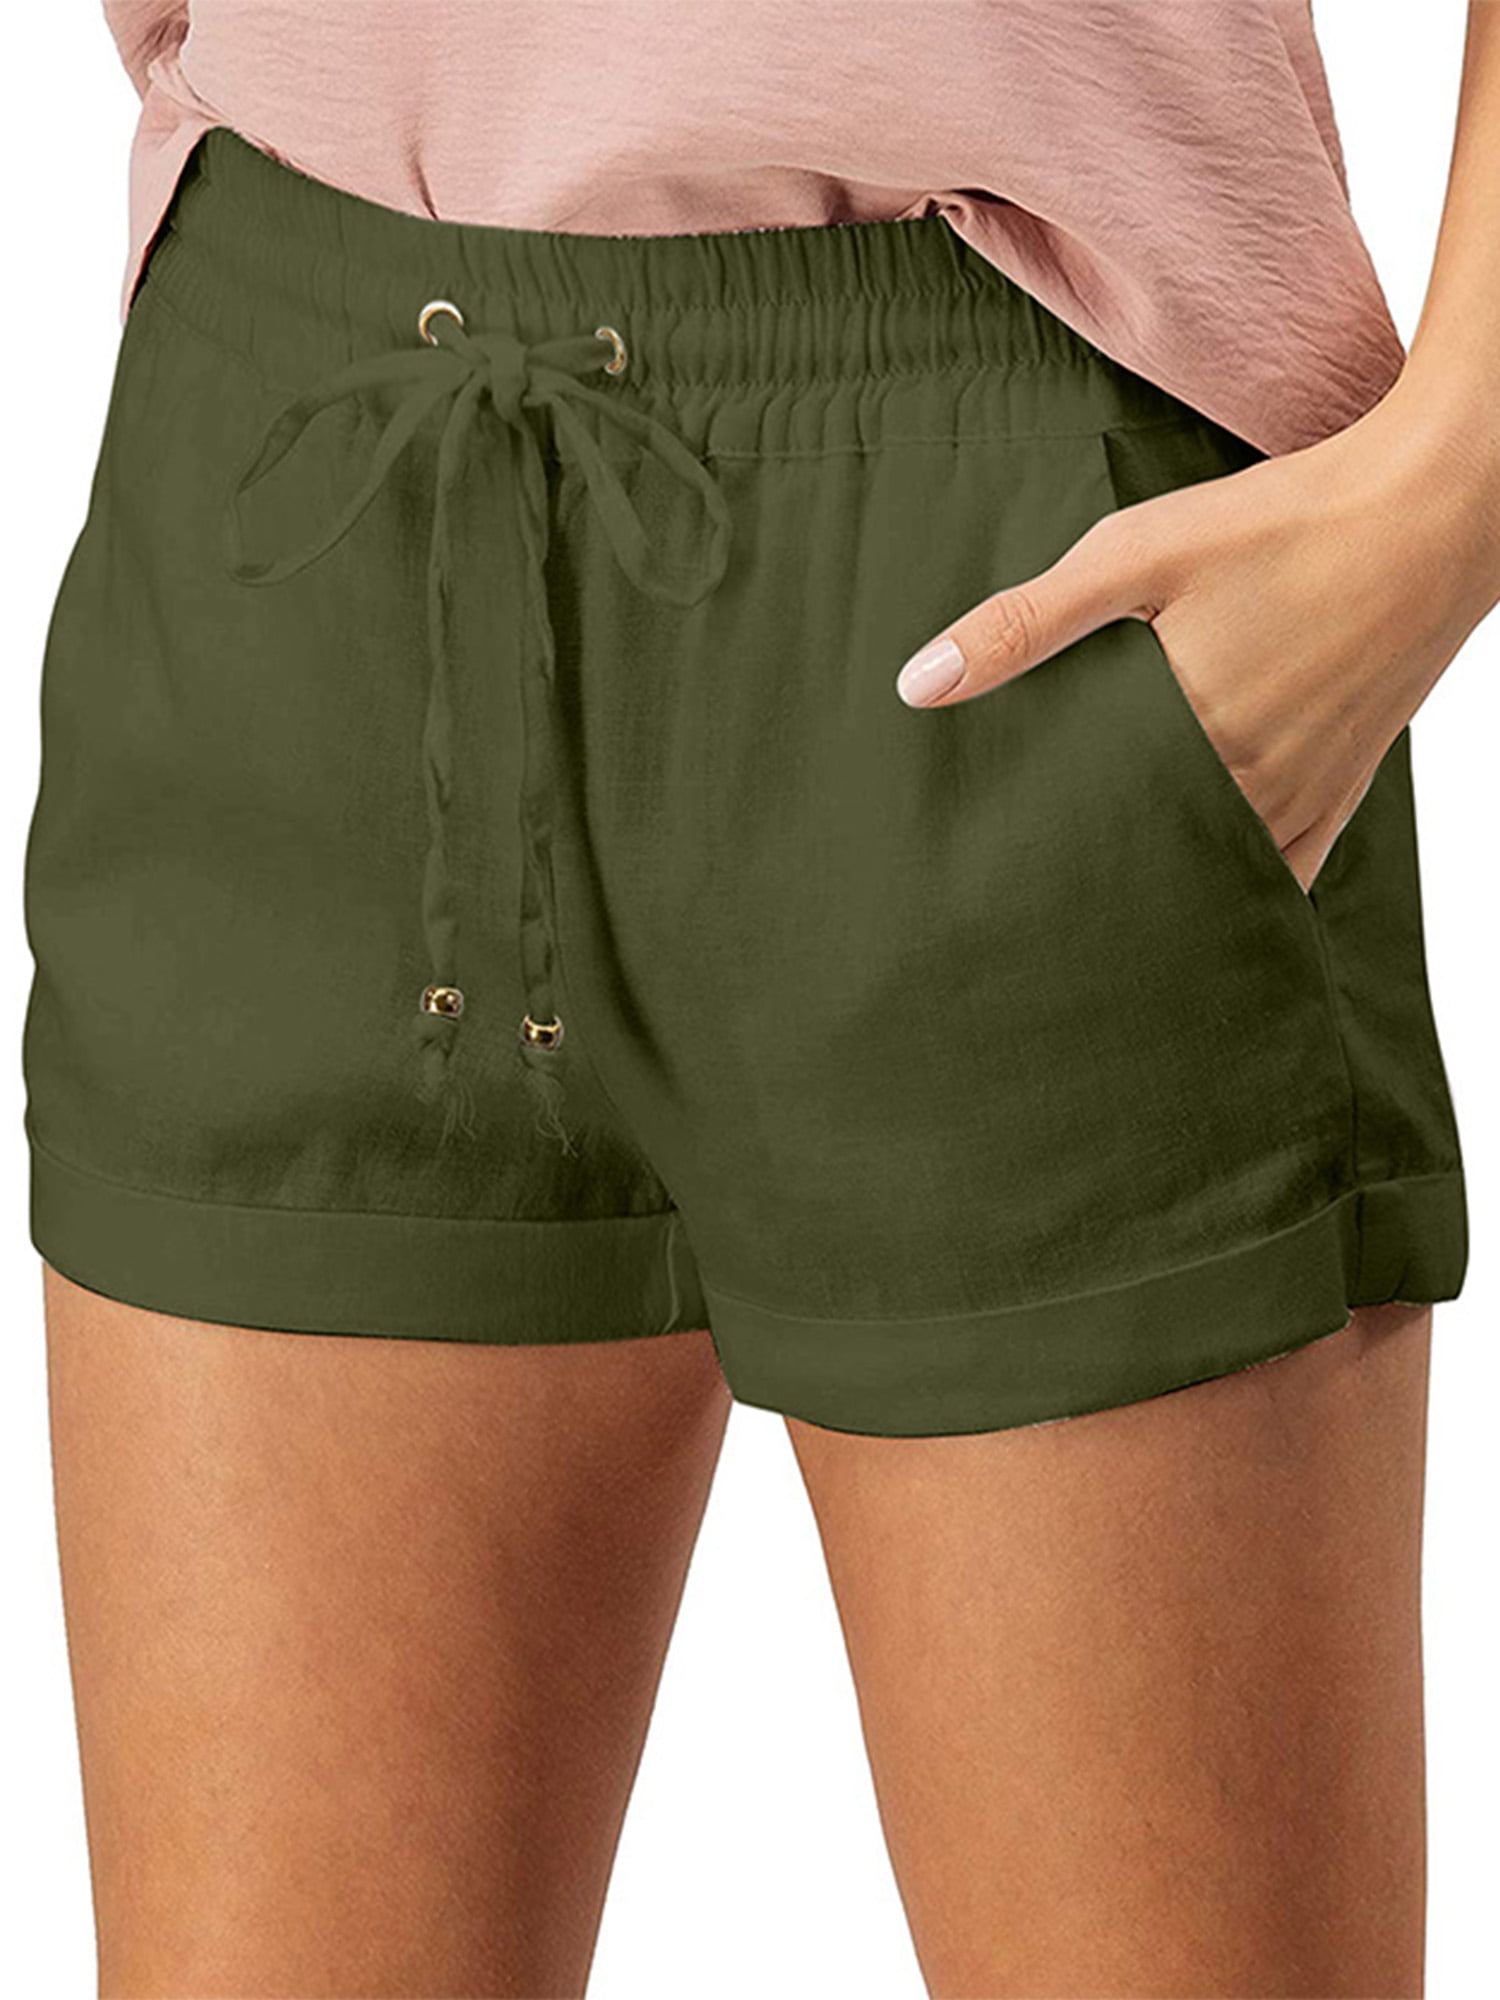 JINRS Womens Summer Shorts Pocketed Casual Pants Comfy High-Waist Pants Straight-Leg Sports Casual Pocket Shorts